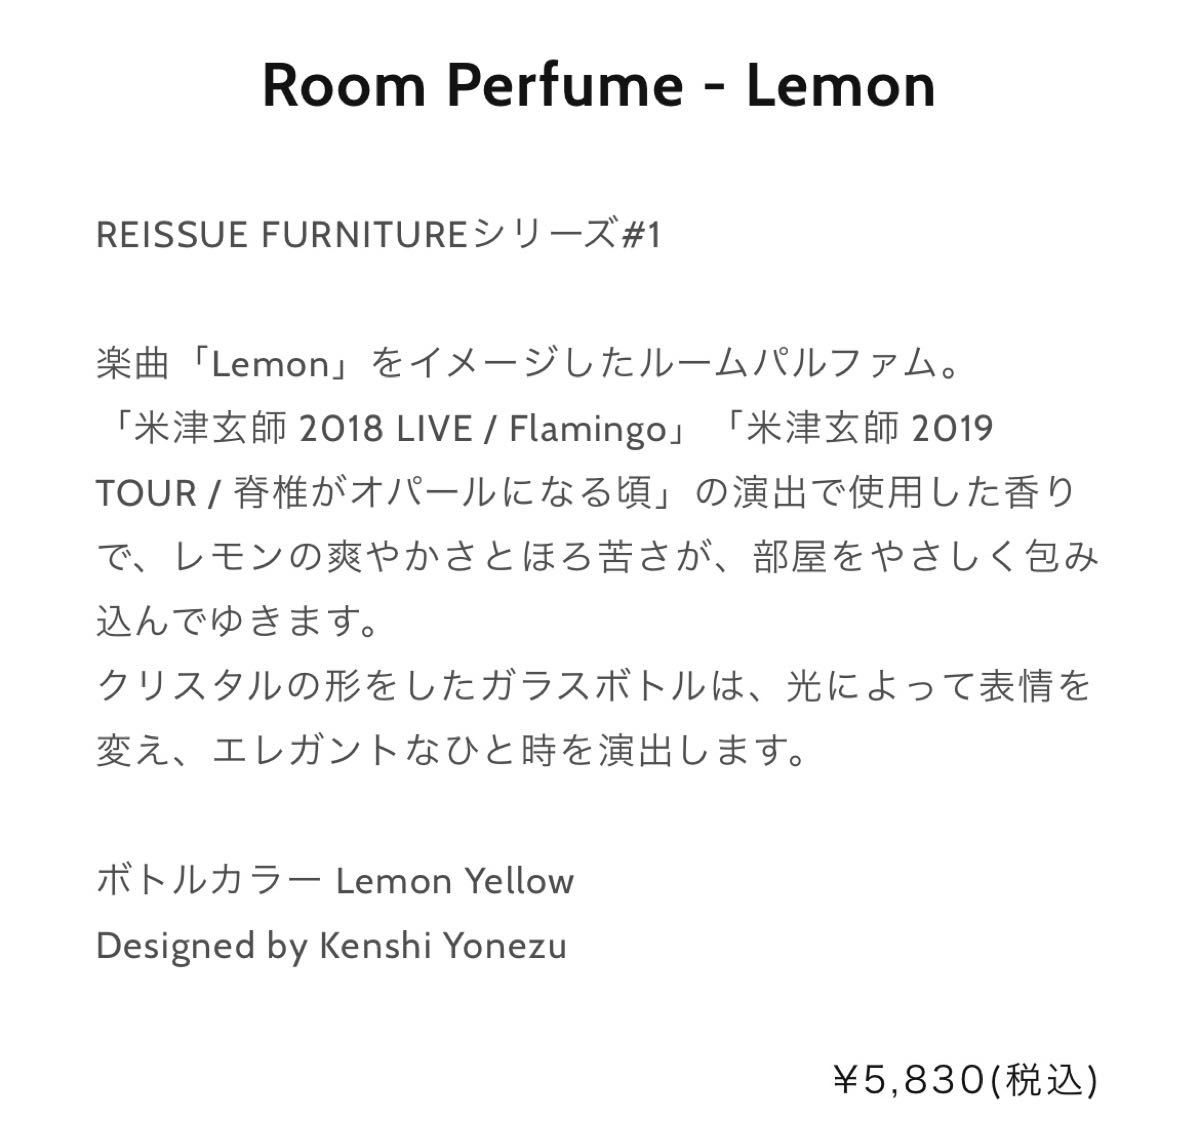 9587円 【税込?送料無料】 米津玄師 ルームフレグランス Room Perfume - Lemon